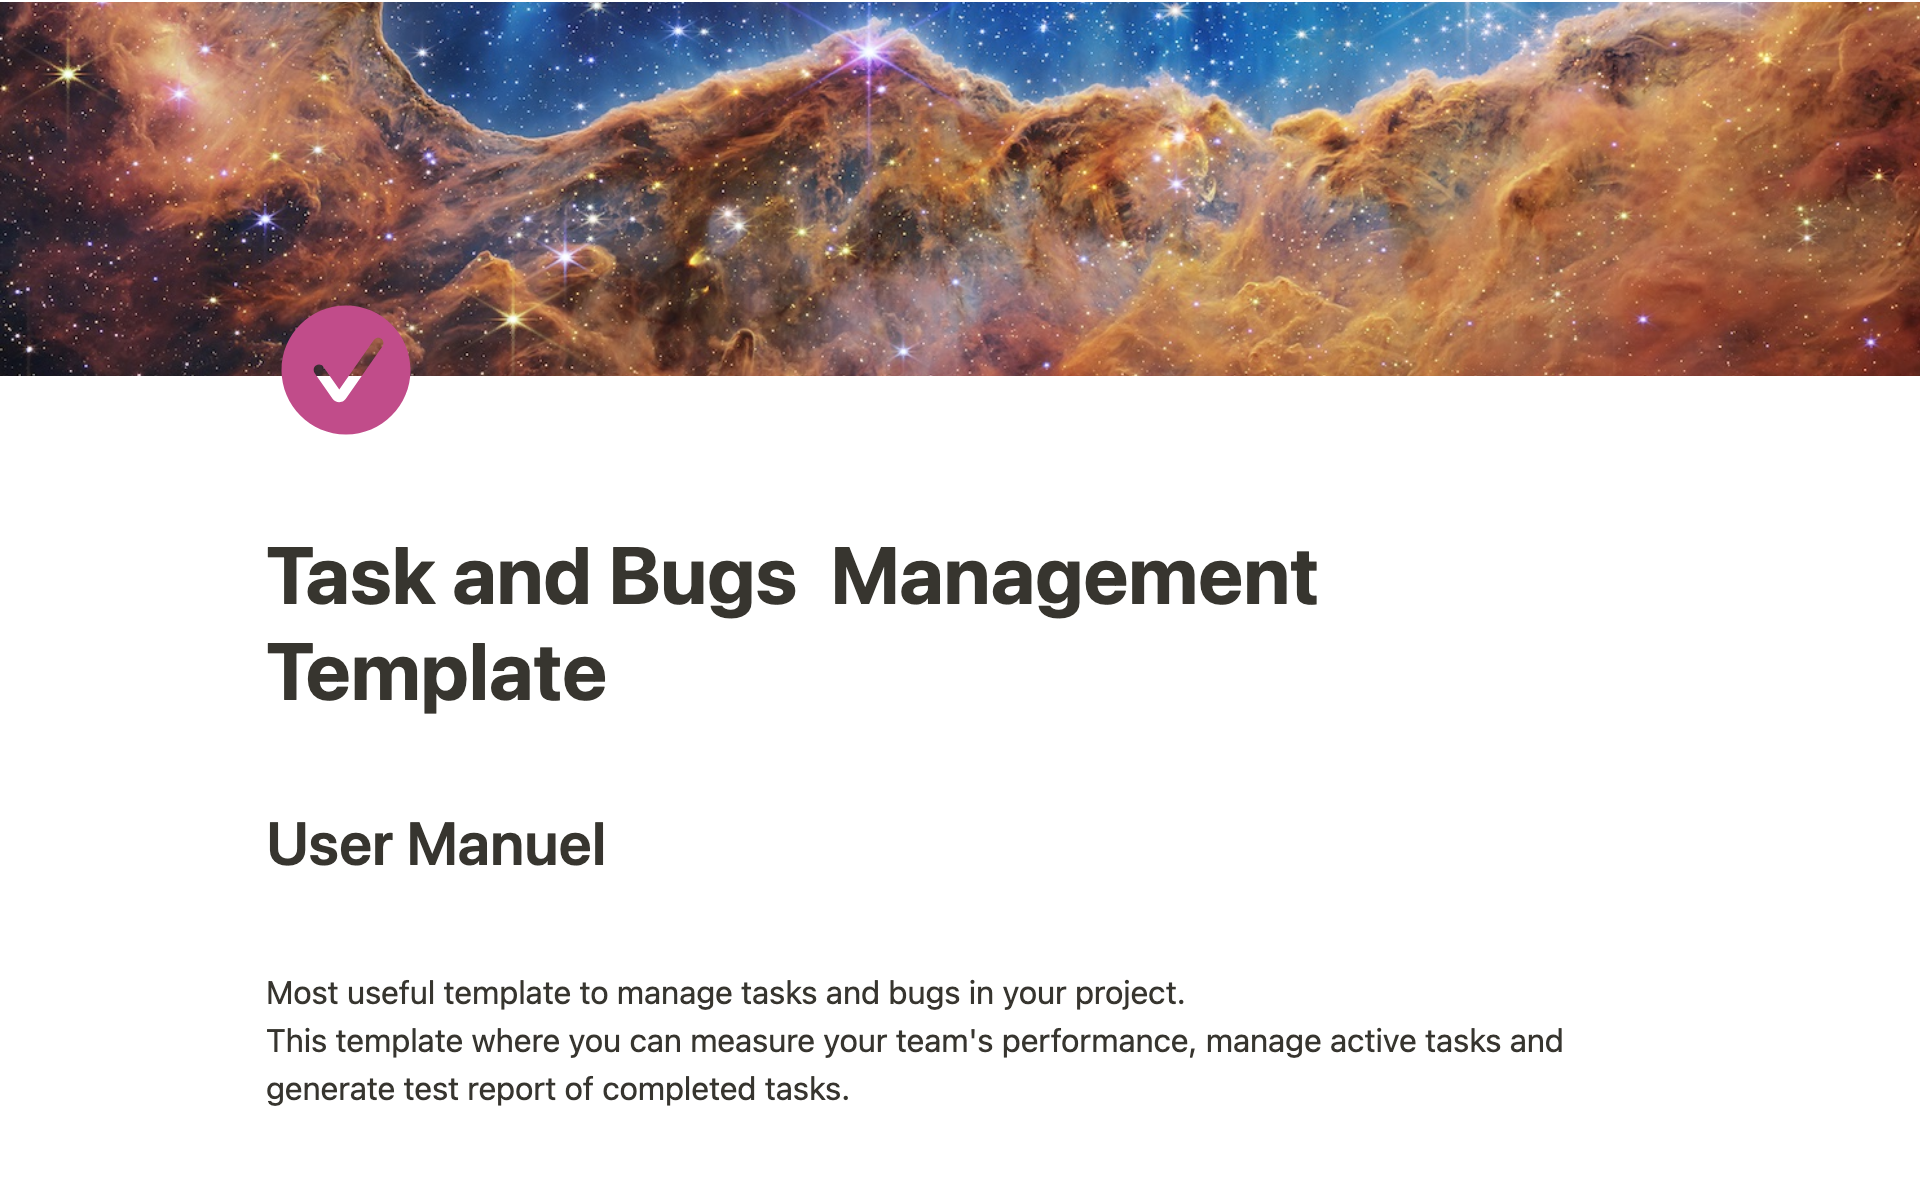 Uma prévia do modelo para Task and Bugs Management Template